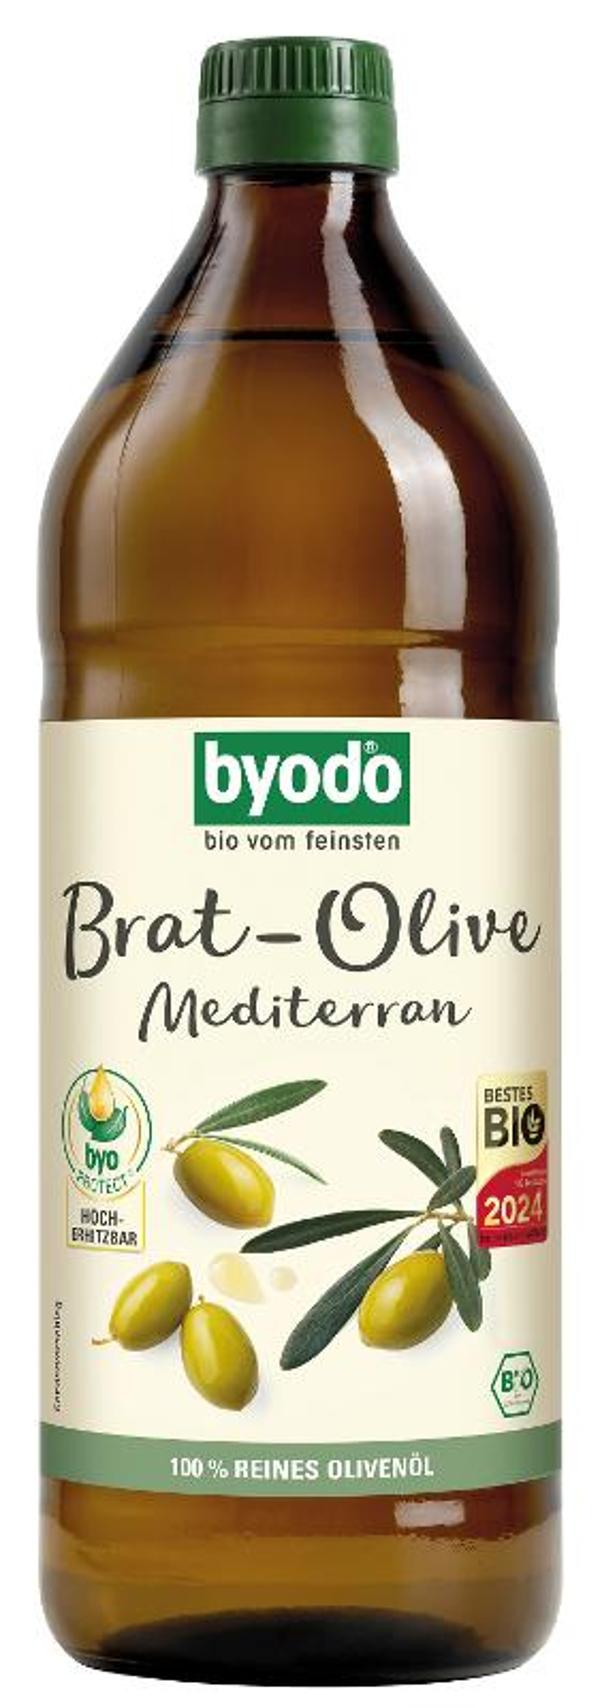 Produktfoto zu Byodo Brat-Olive Mediterran 750 ml